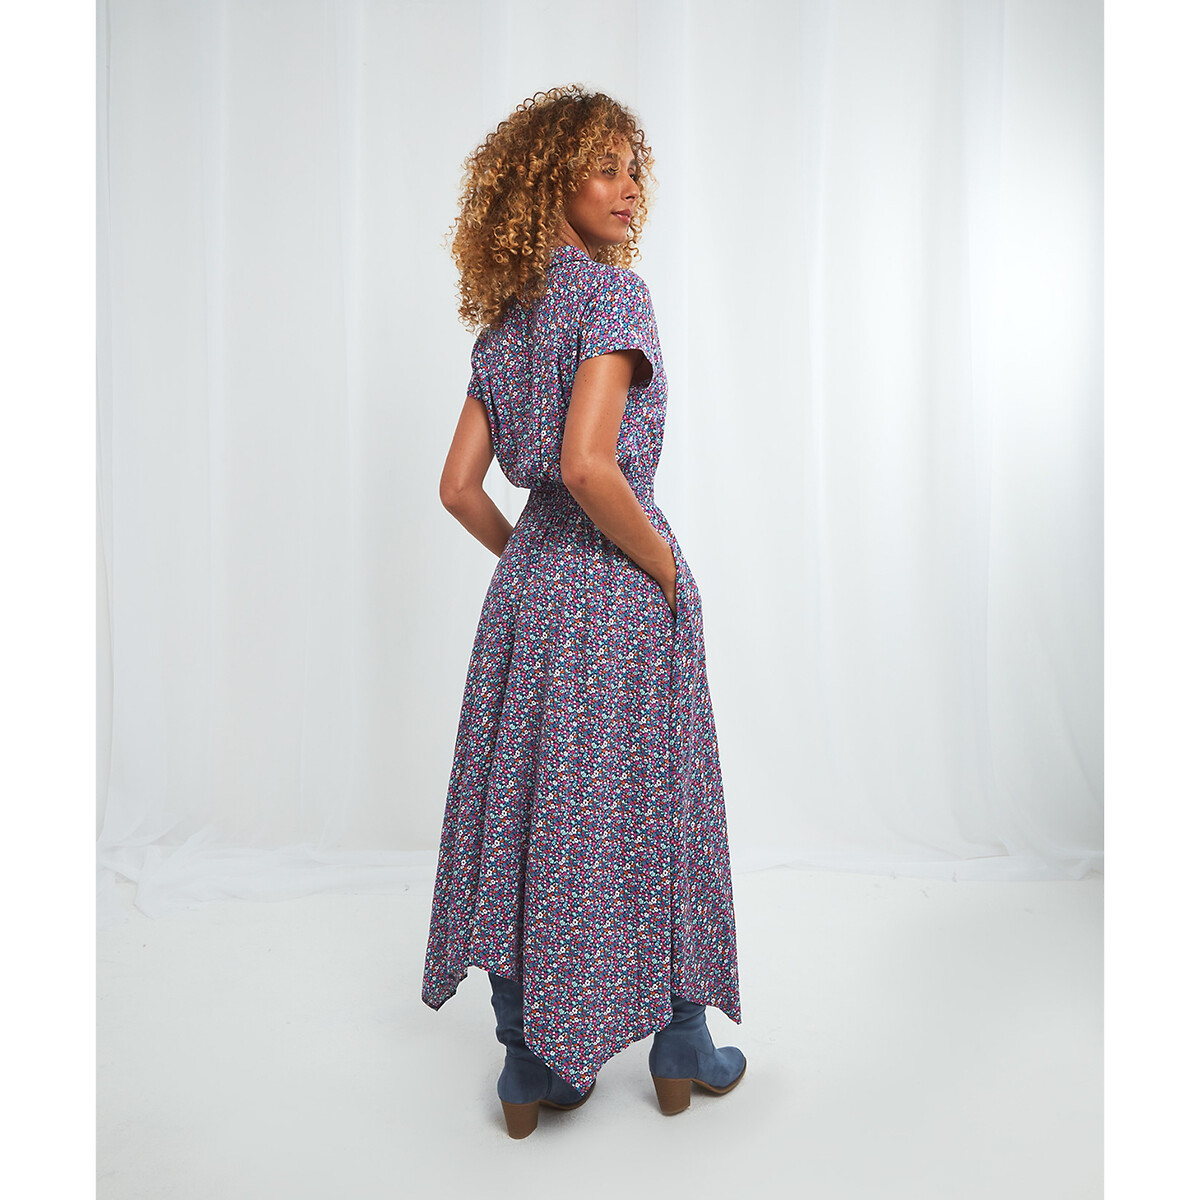 Платье JOE BROWNS Длинное асимметричное с поясом со сборками 48 другие, размер 48 - фото 2